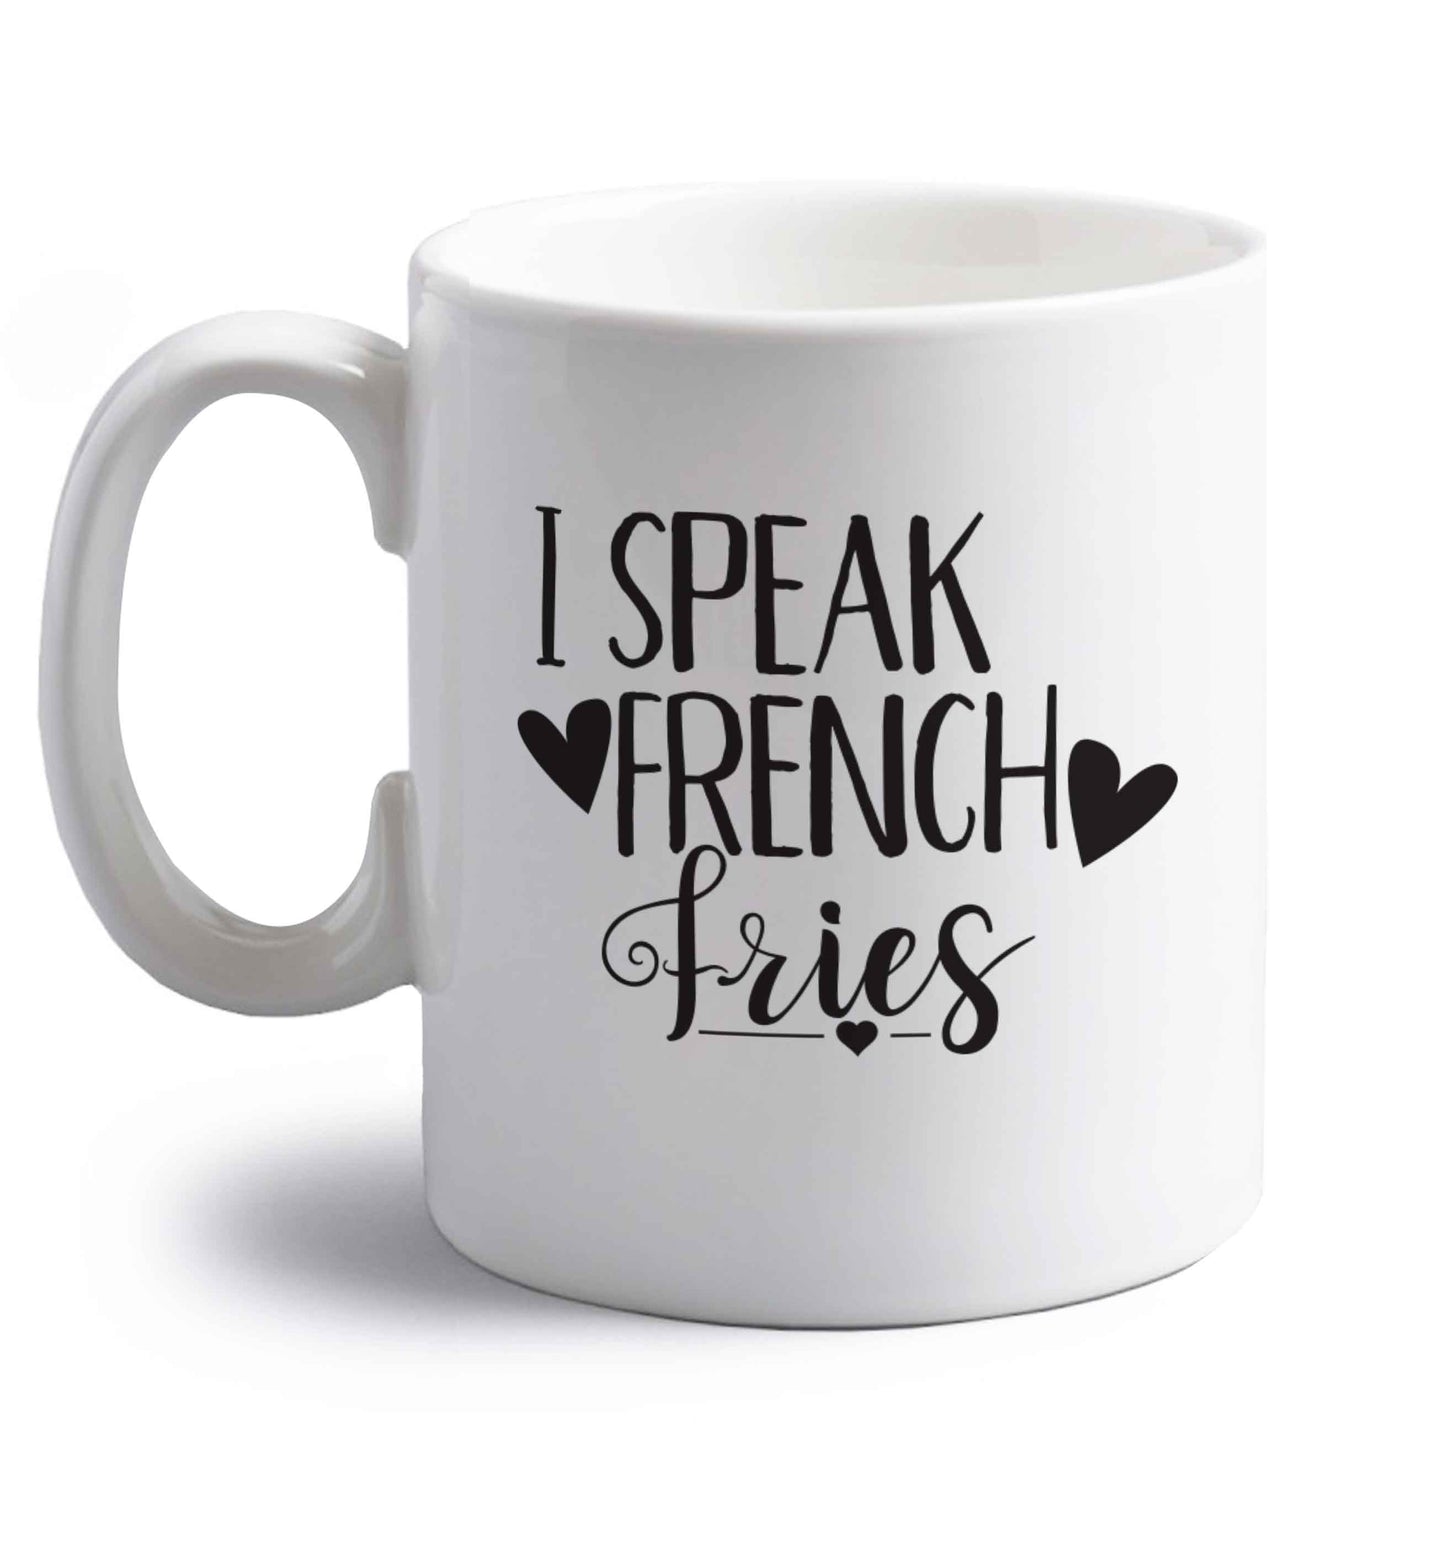 I speak French fries right handed white ceramic mug 